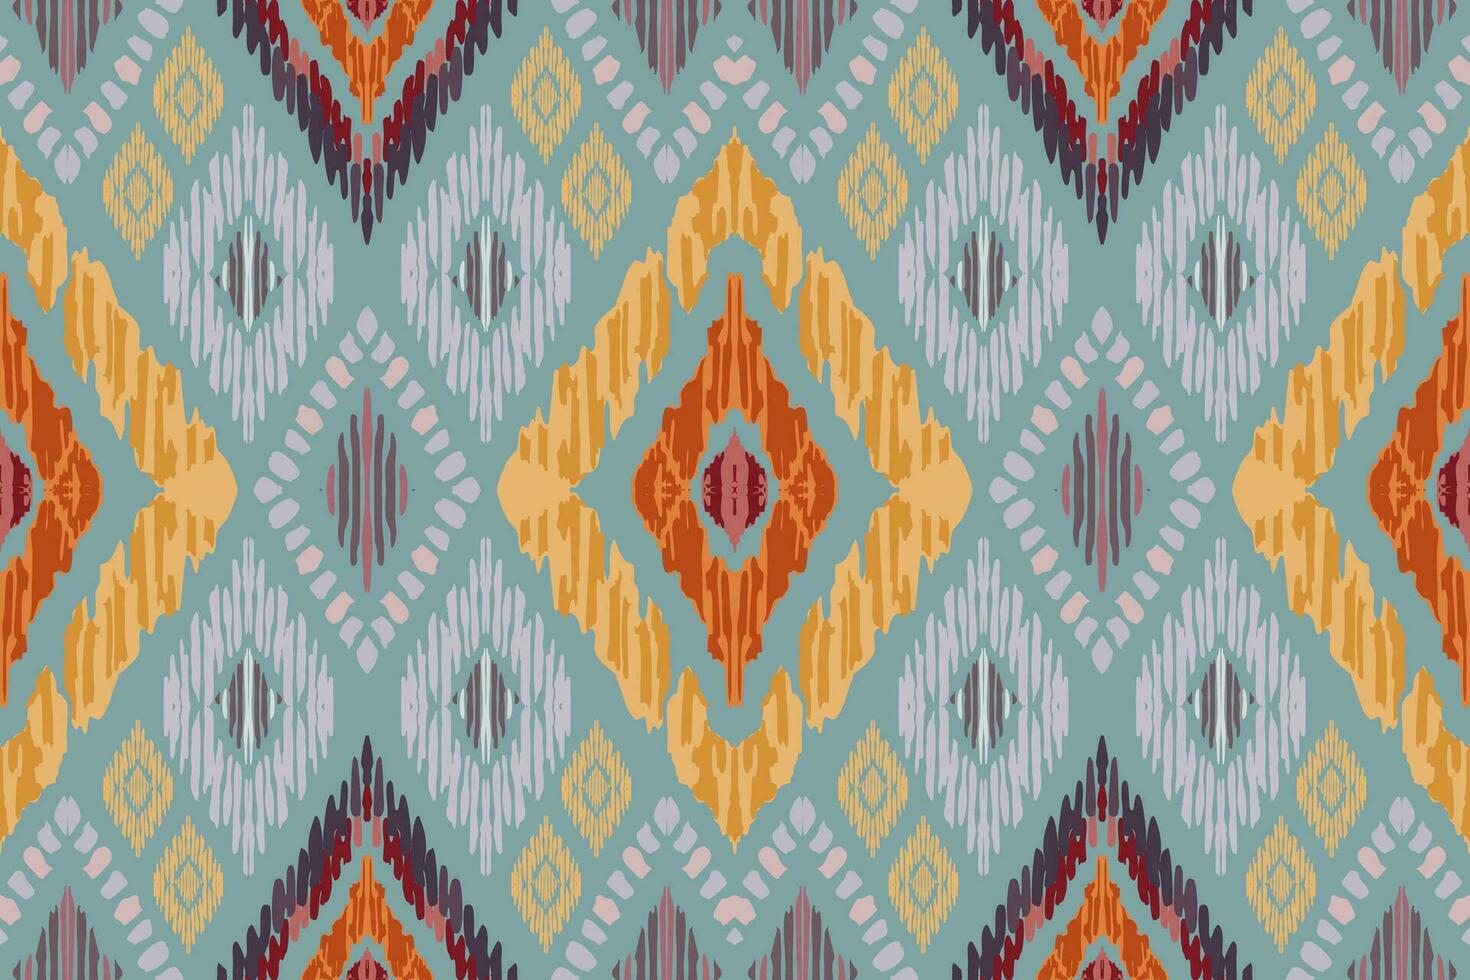 ikat paisley ricamo su grigio sfondo.geometrico etnico orientale senza soluzione di continuità modello tradizionale.azteco stile astratto vettore illustrazione.disegno per trama, tessuto, abbigliamento, avvolgimento, tappeto, stampa.